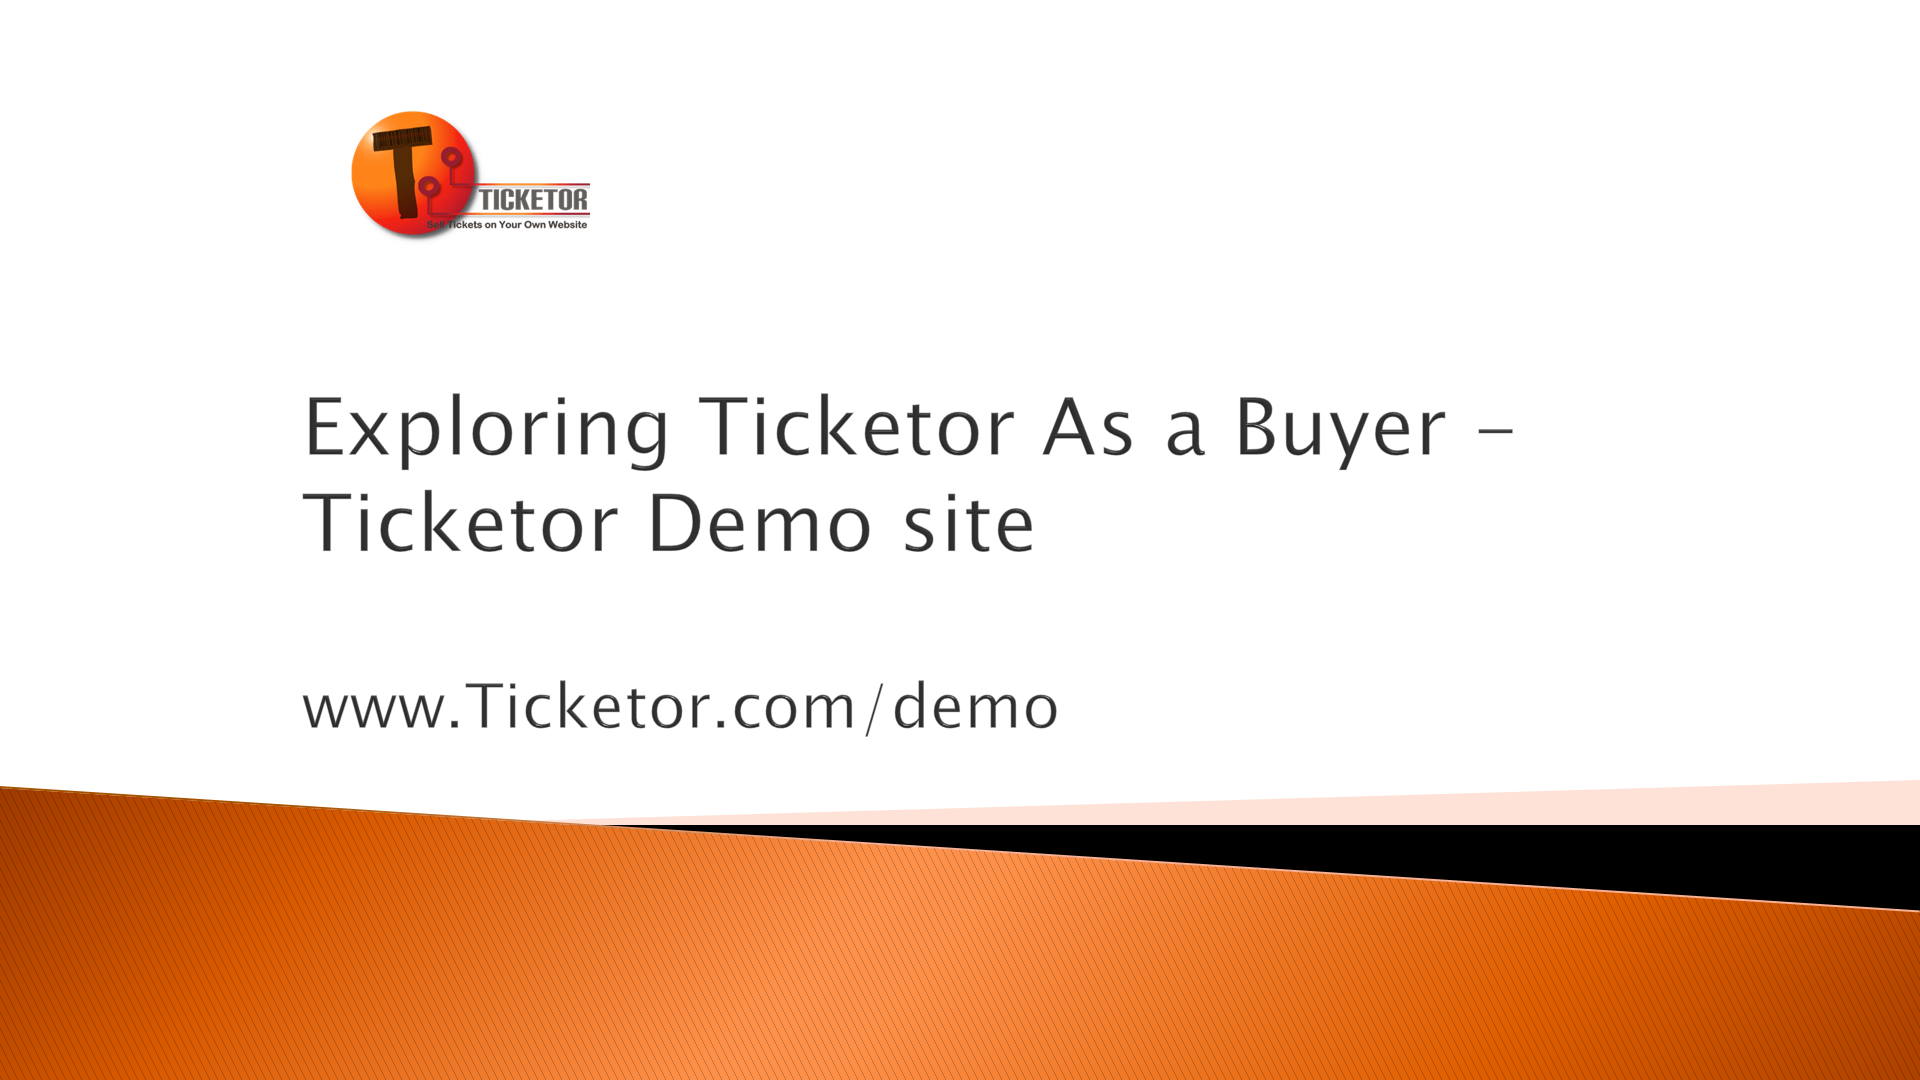 Exploring Ticketor as a Buyer - Ticketor Demo Site